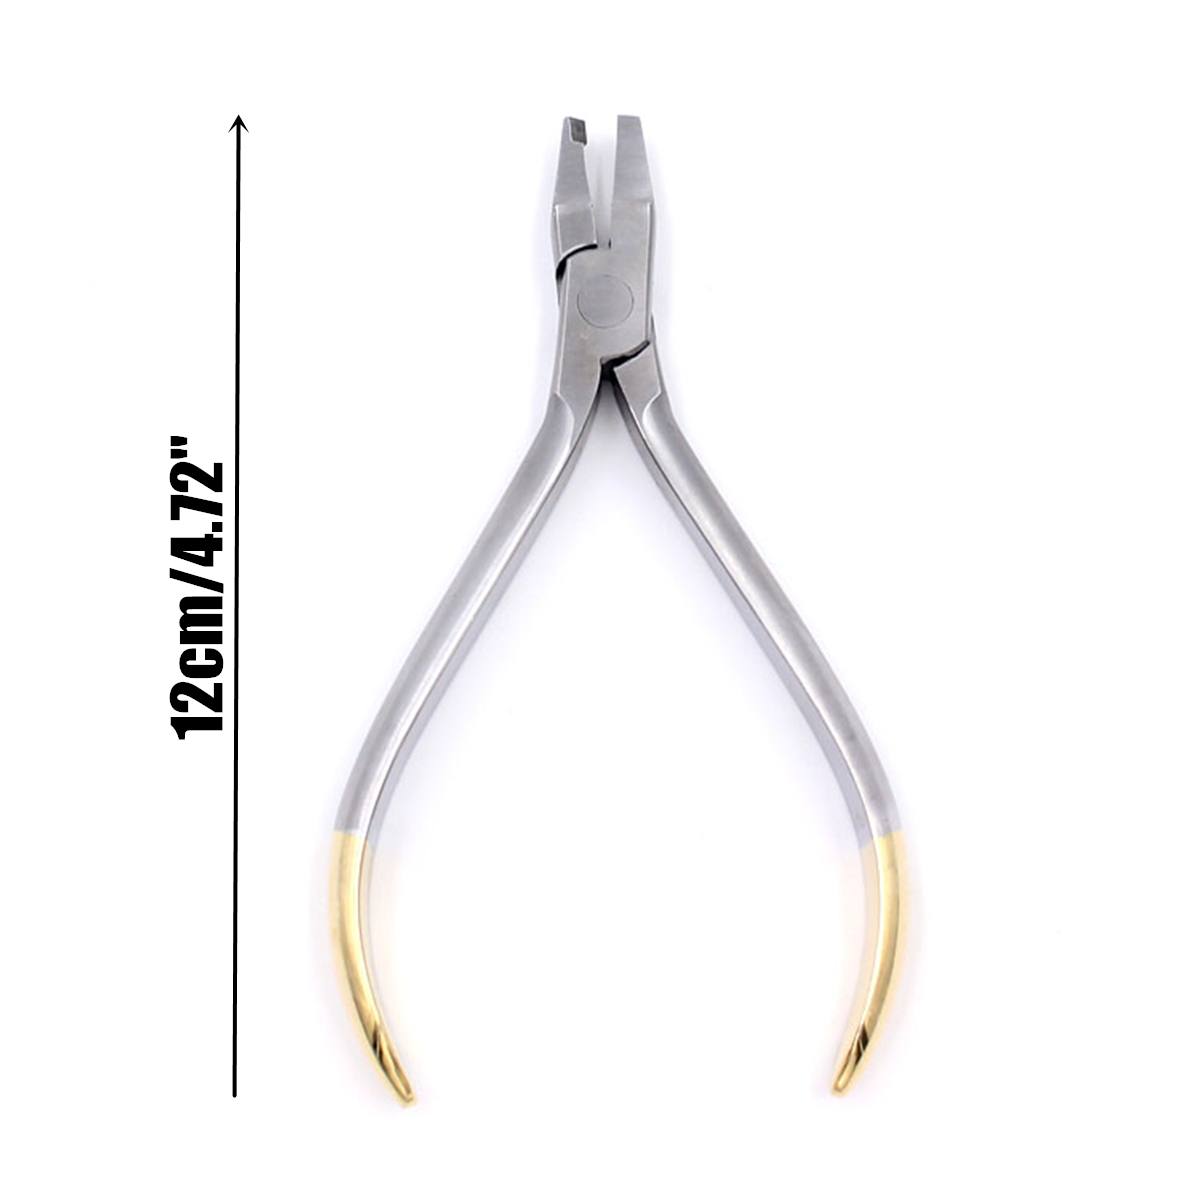 Dental-Orthodontic-Forceps-Pliers-Tool-Cutter-End-Distal-Wires-Bending-Plier-KIM-Teeth-1439156-8